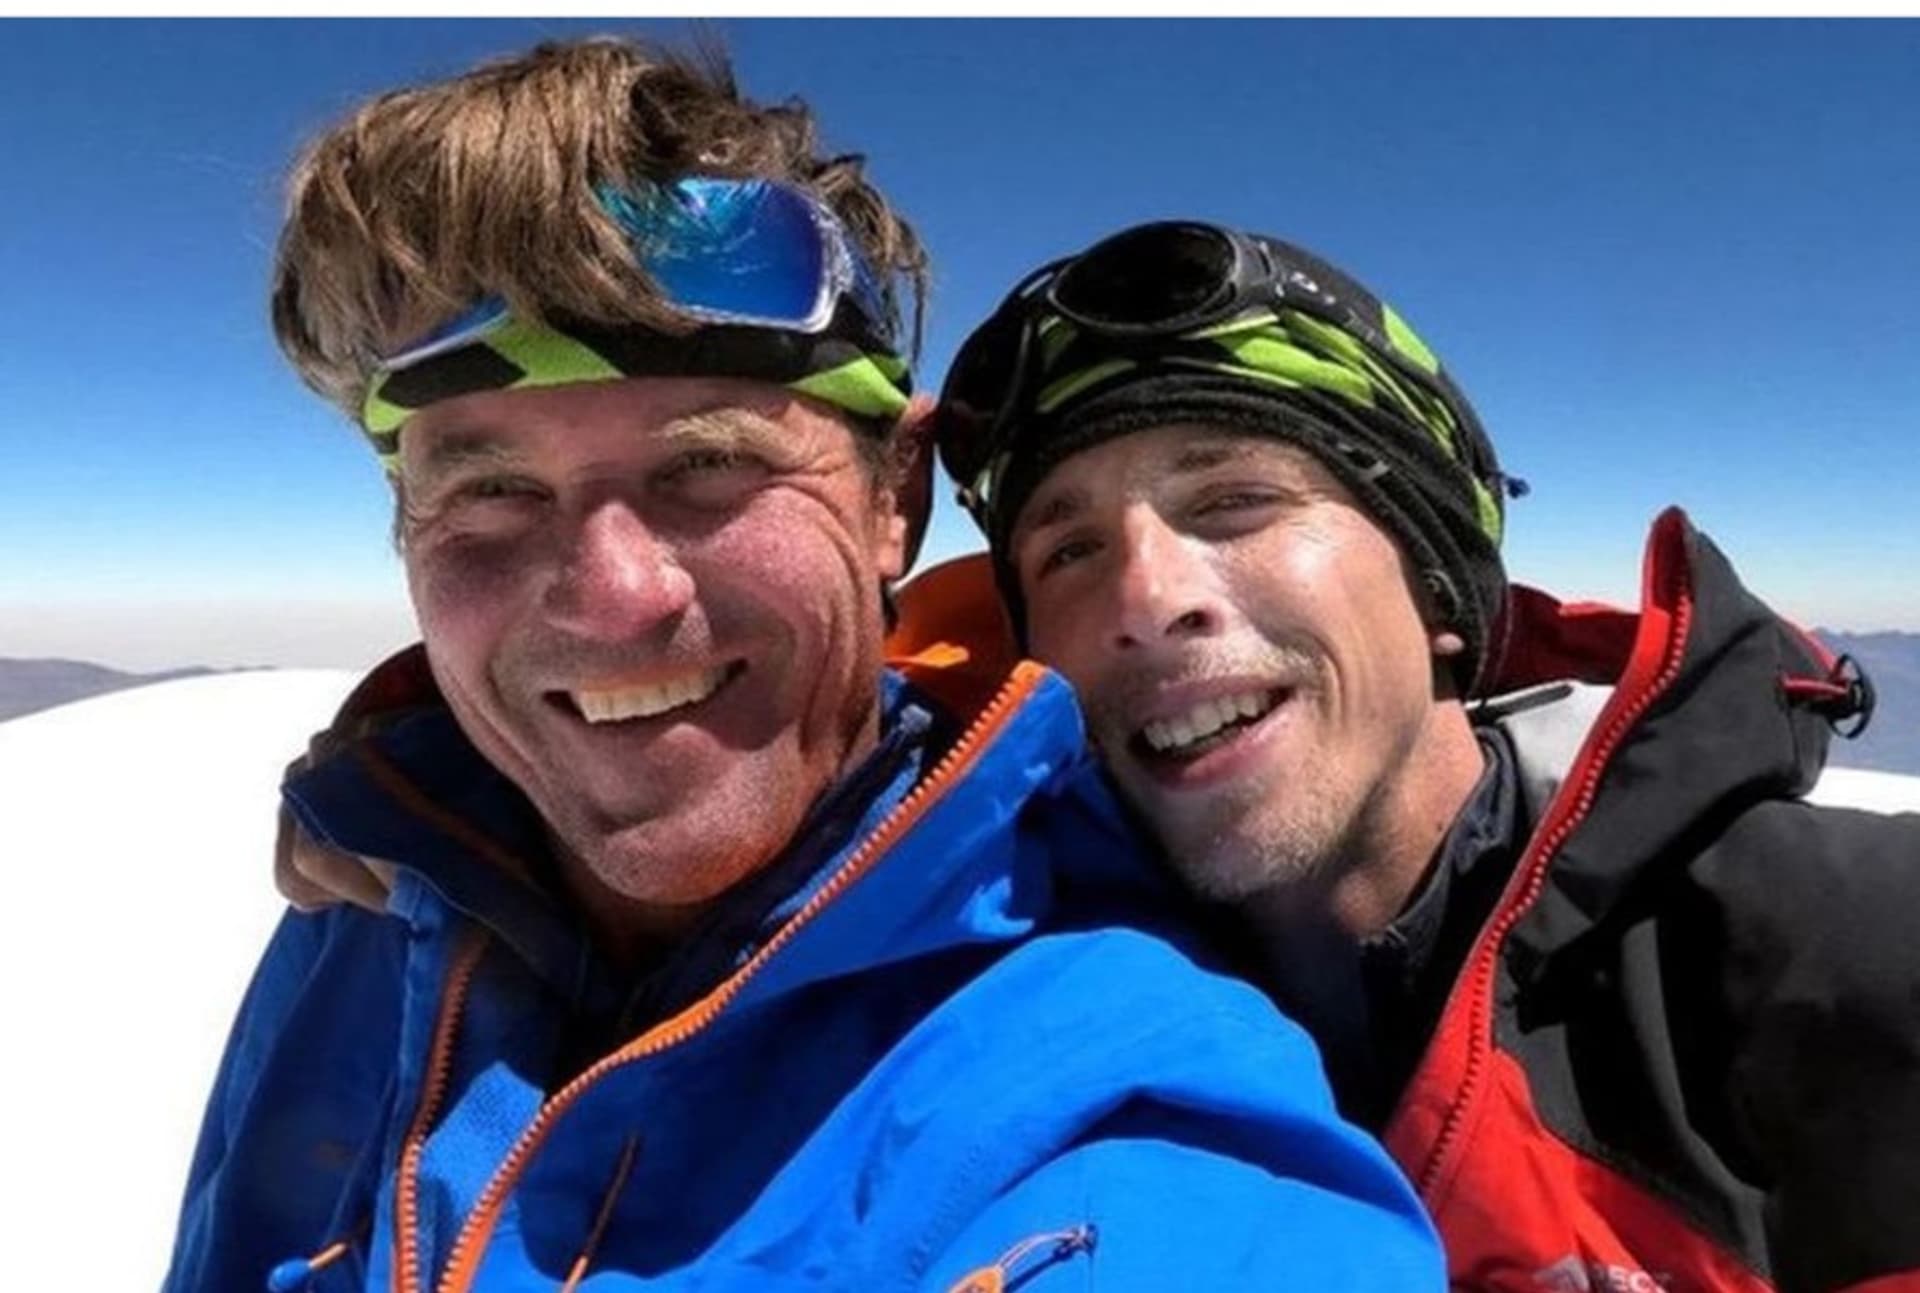 Čeští horolezci Marek Holeček a Radoslav Groh zvládli po strastech a uvíznutí sejít z himálajské sedmitisícovky Baruntse a jsou na cestě domů.